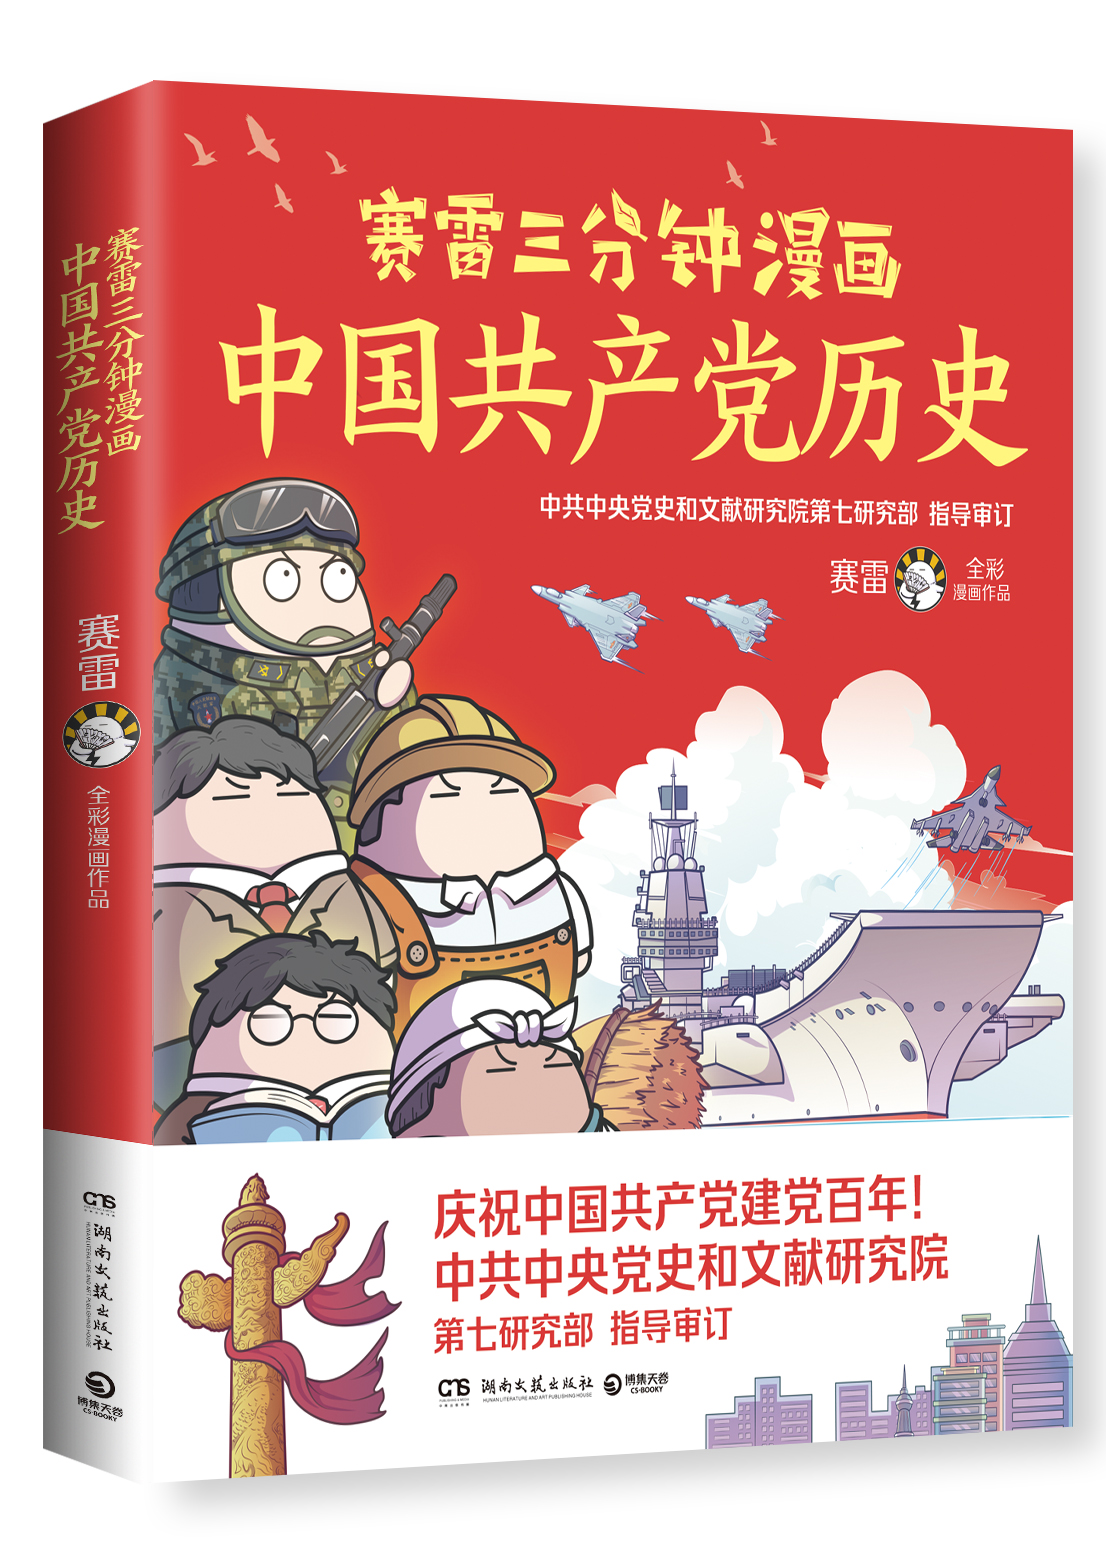 《赛雷三分钟漫画中国共产党历史》书影